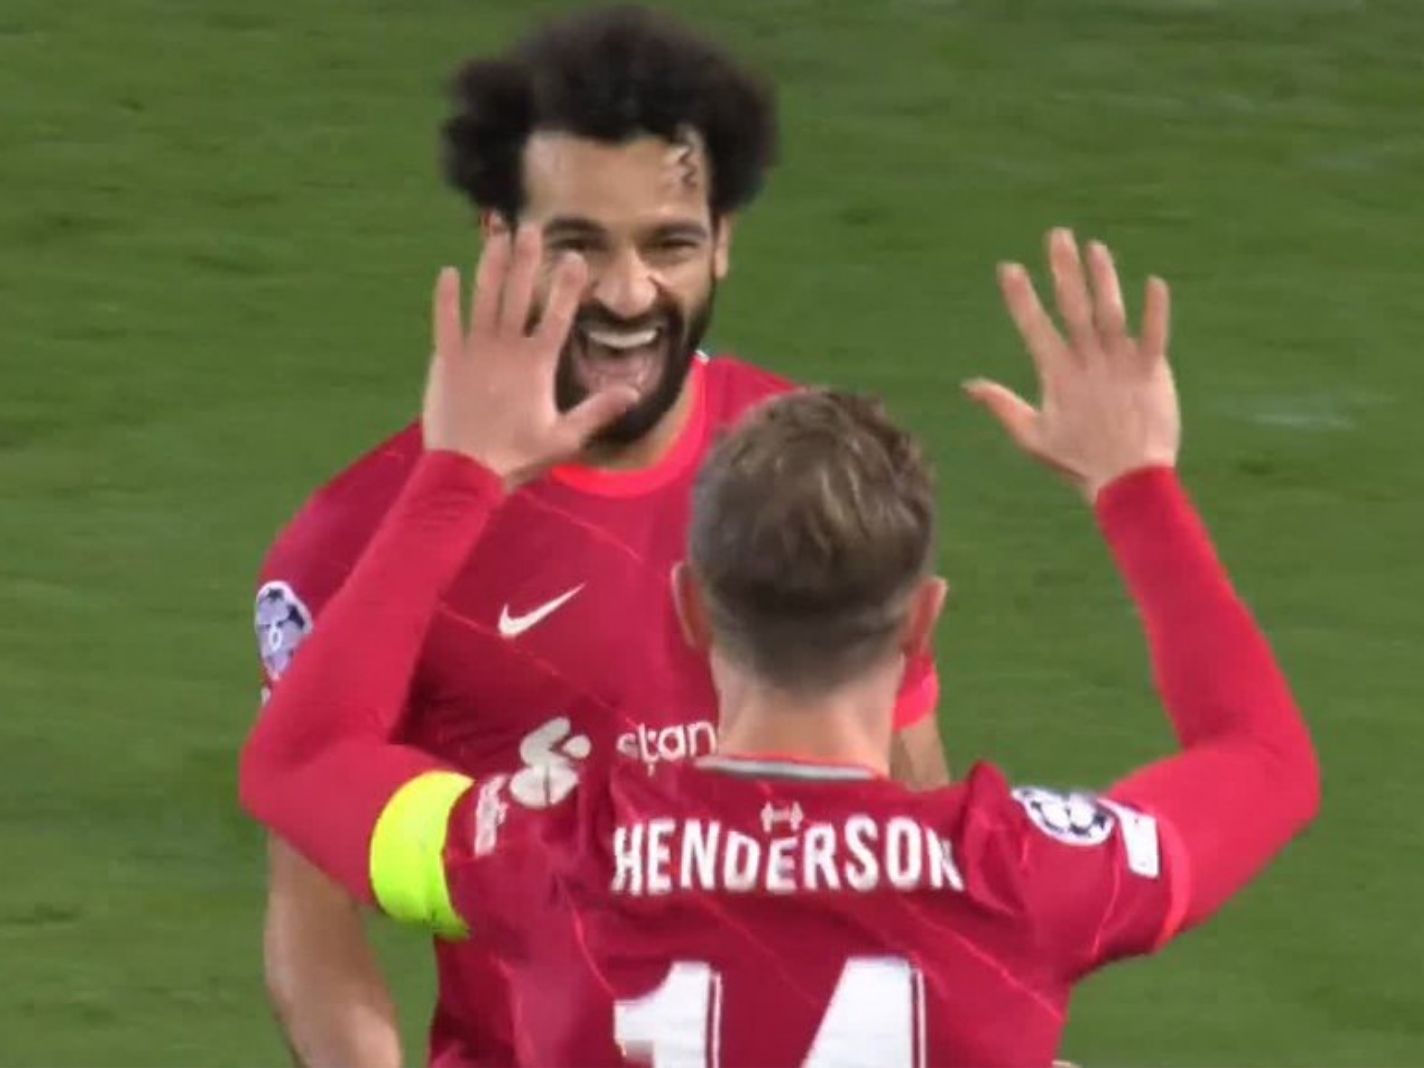 Mohamed Salah celebrates with Jordan Henderson